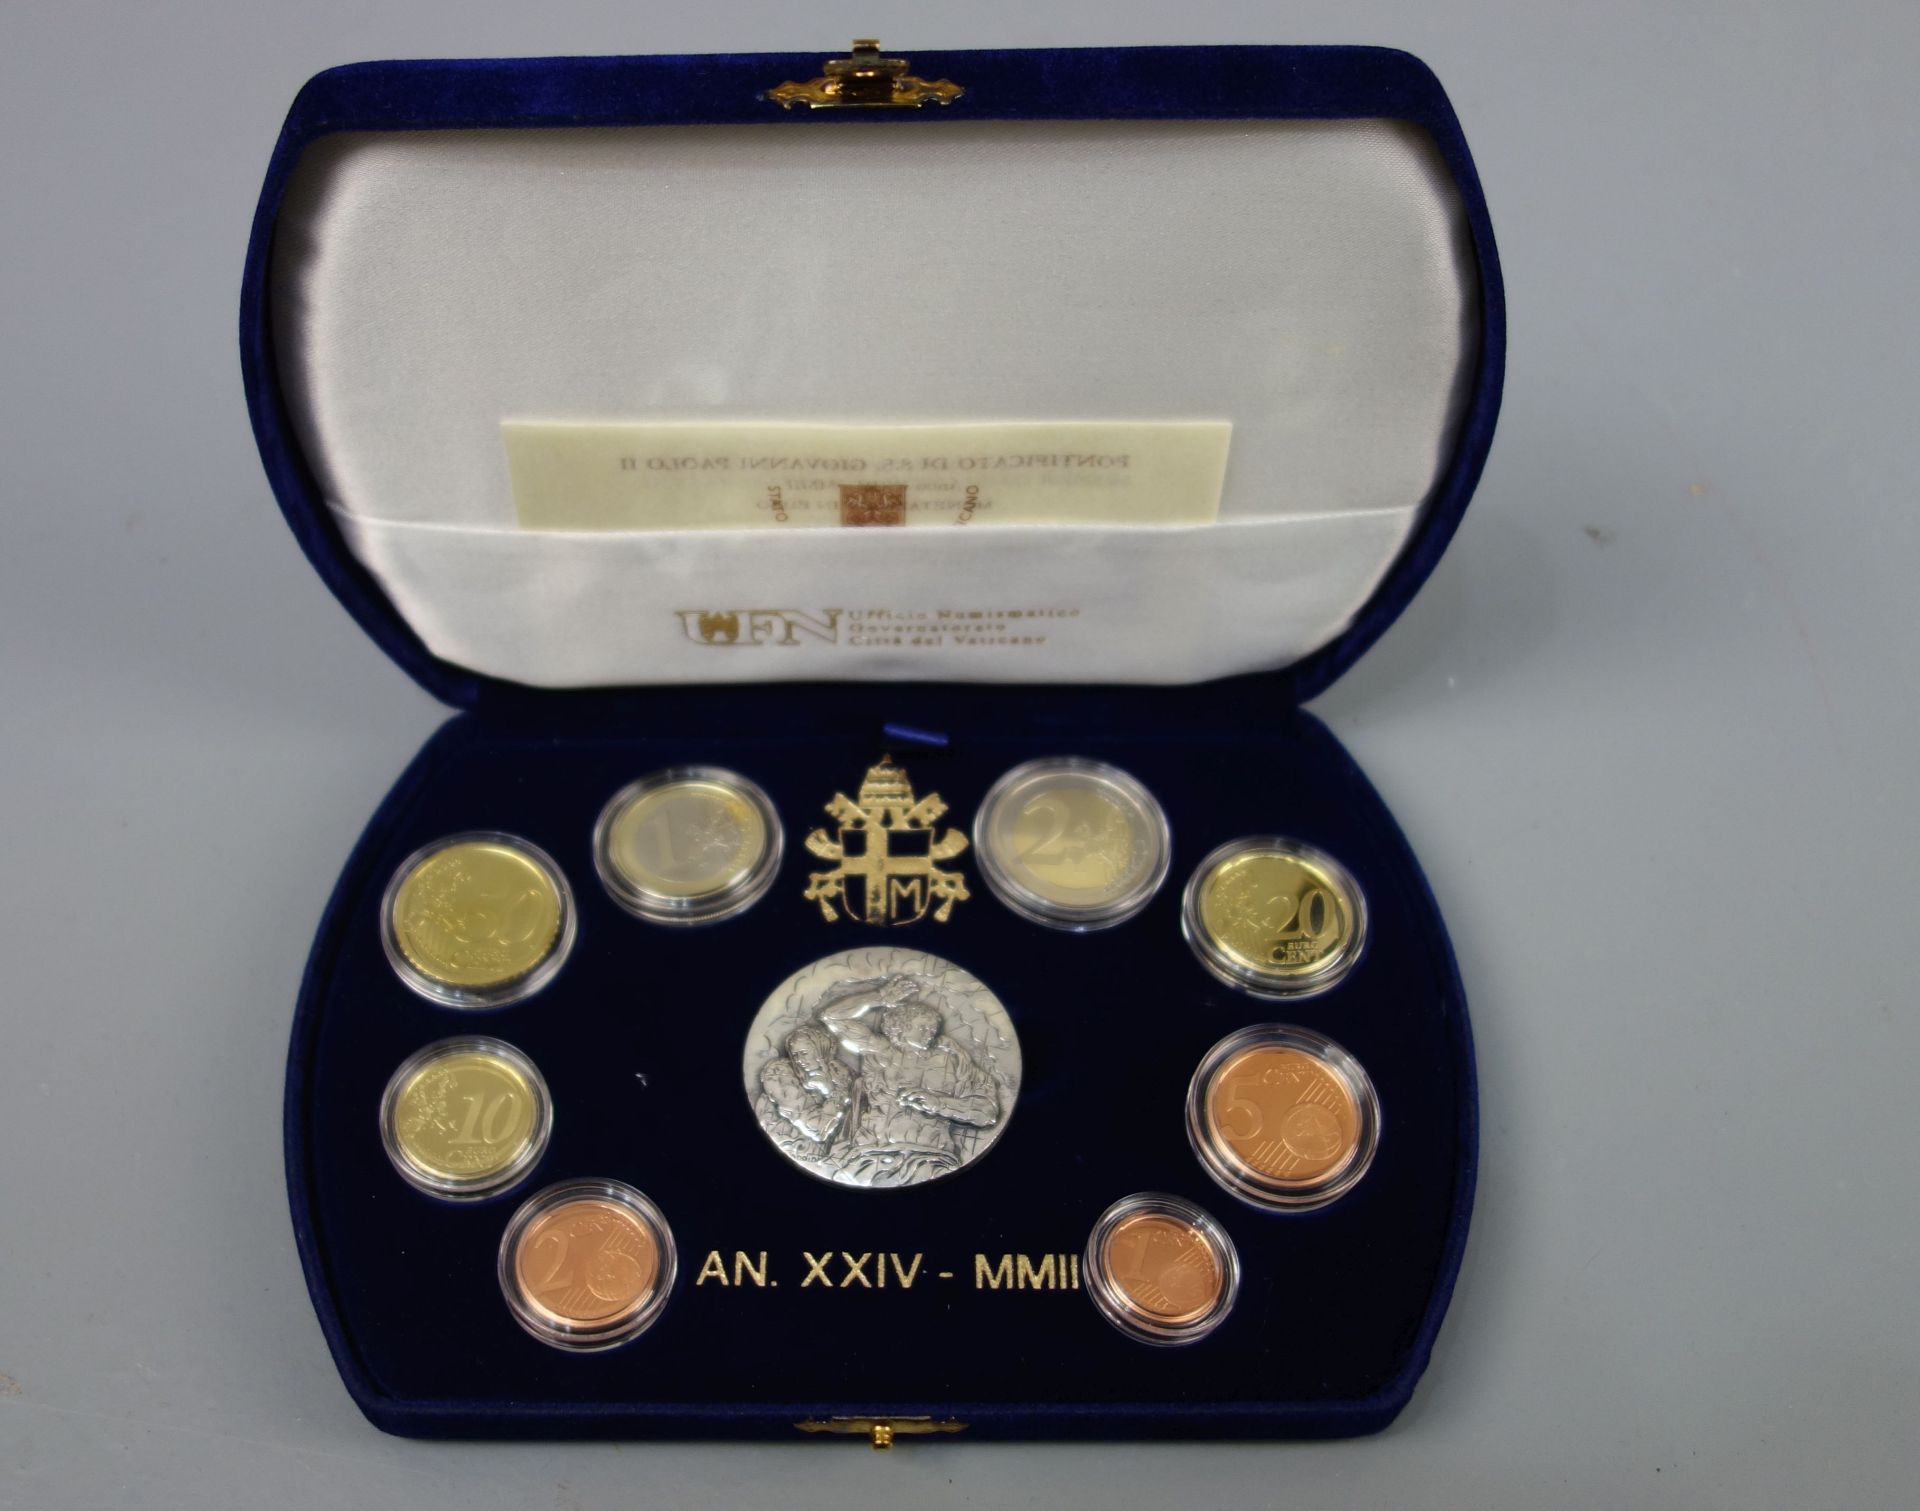 MÜNZSATZ von 2002: Papst Johannes Paul II. mit Silbermedaille in Schatulle - Image 2 of 3